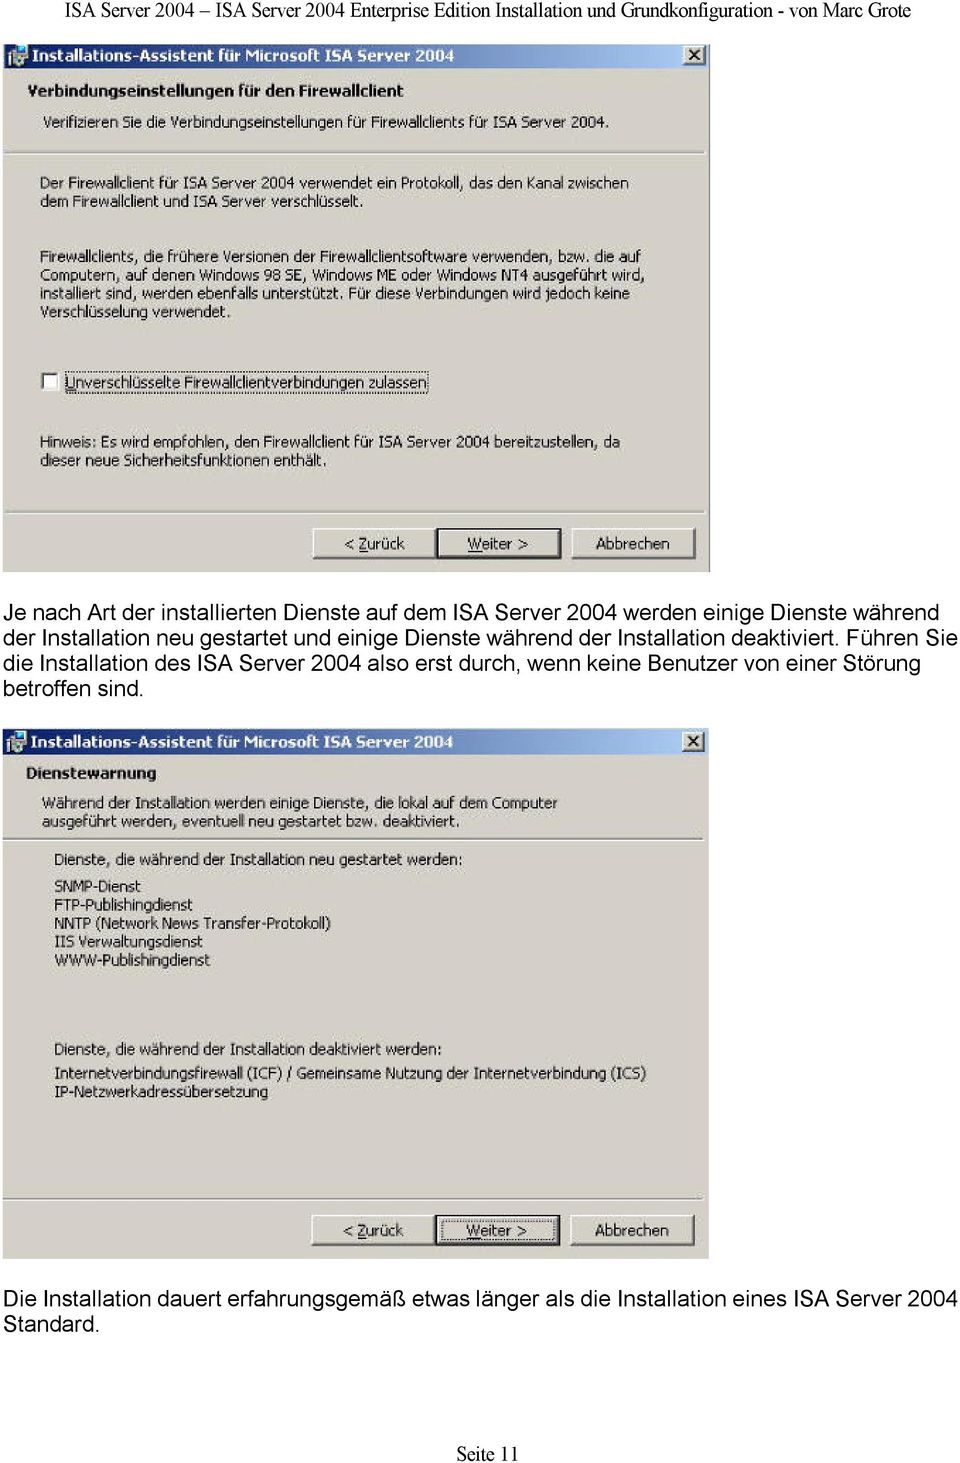 Führen Sie die Installation des ISA Server 2004 also erst durch, wenn keine Benutzer von einer Störung